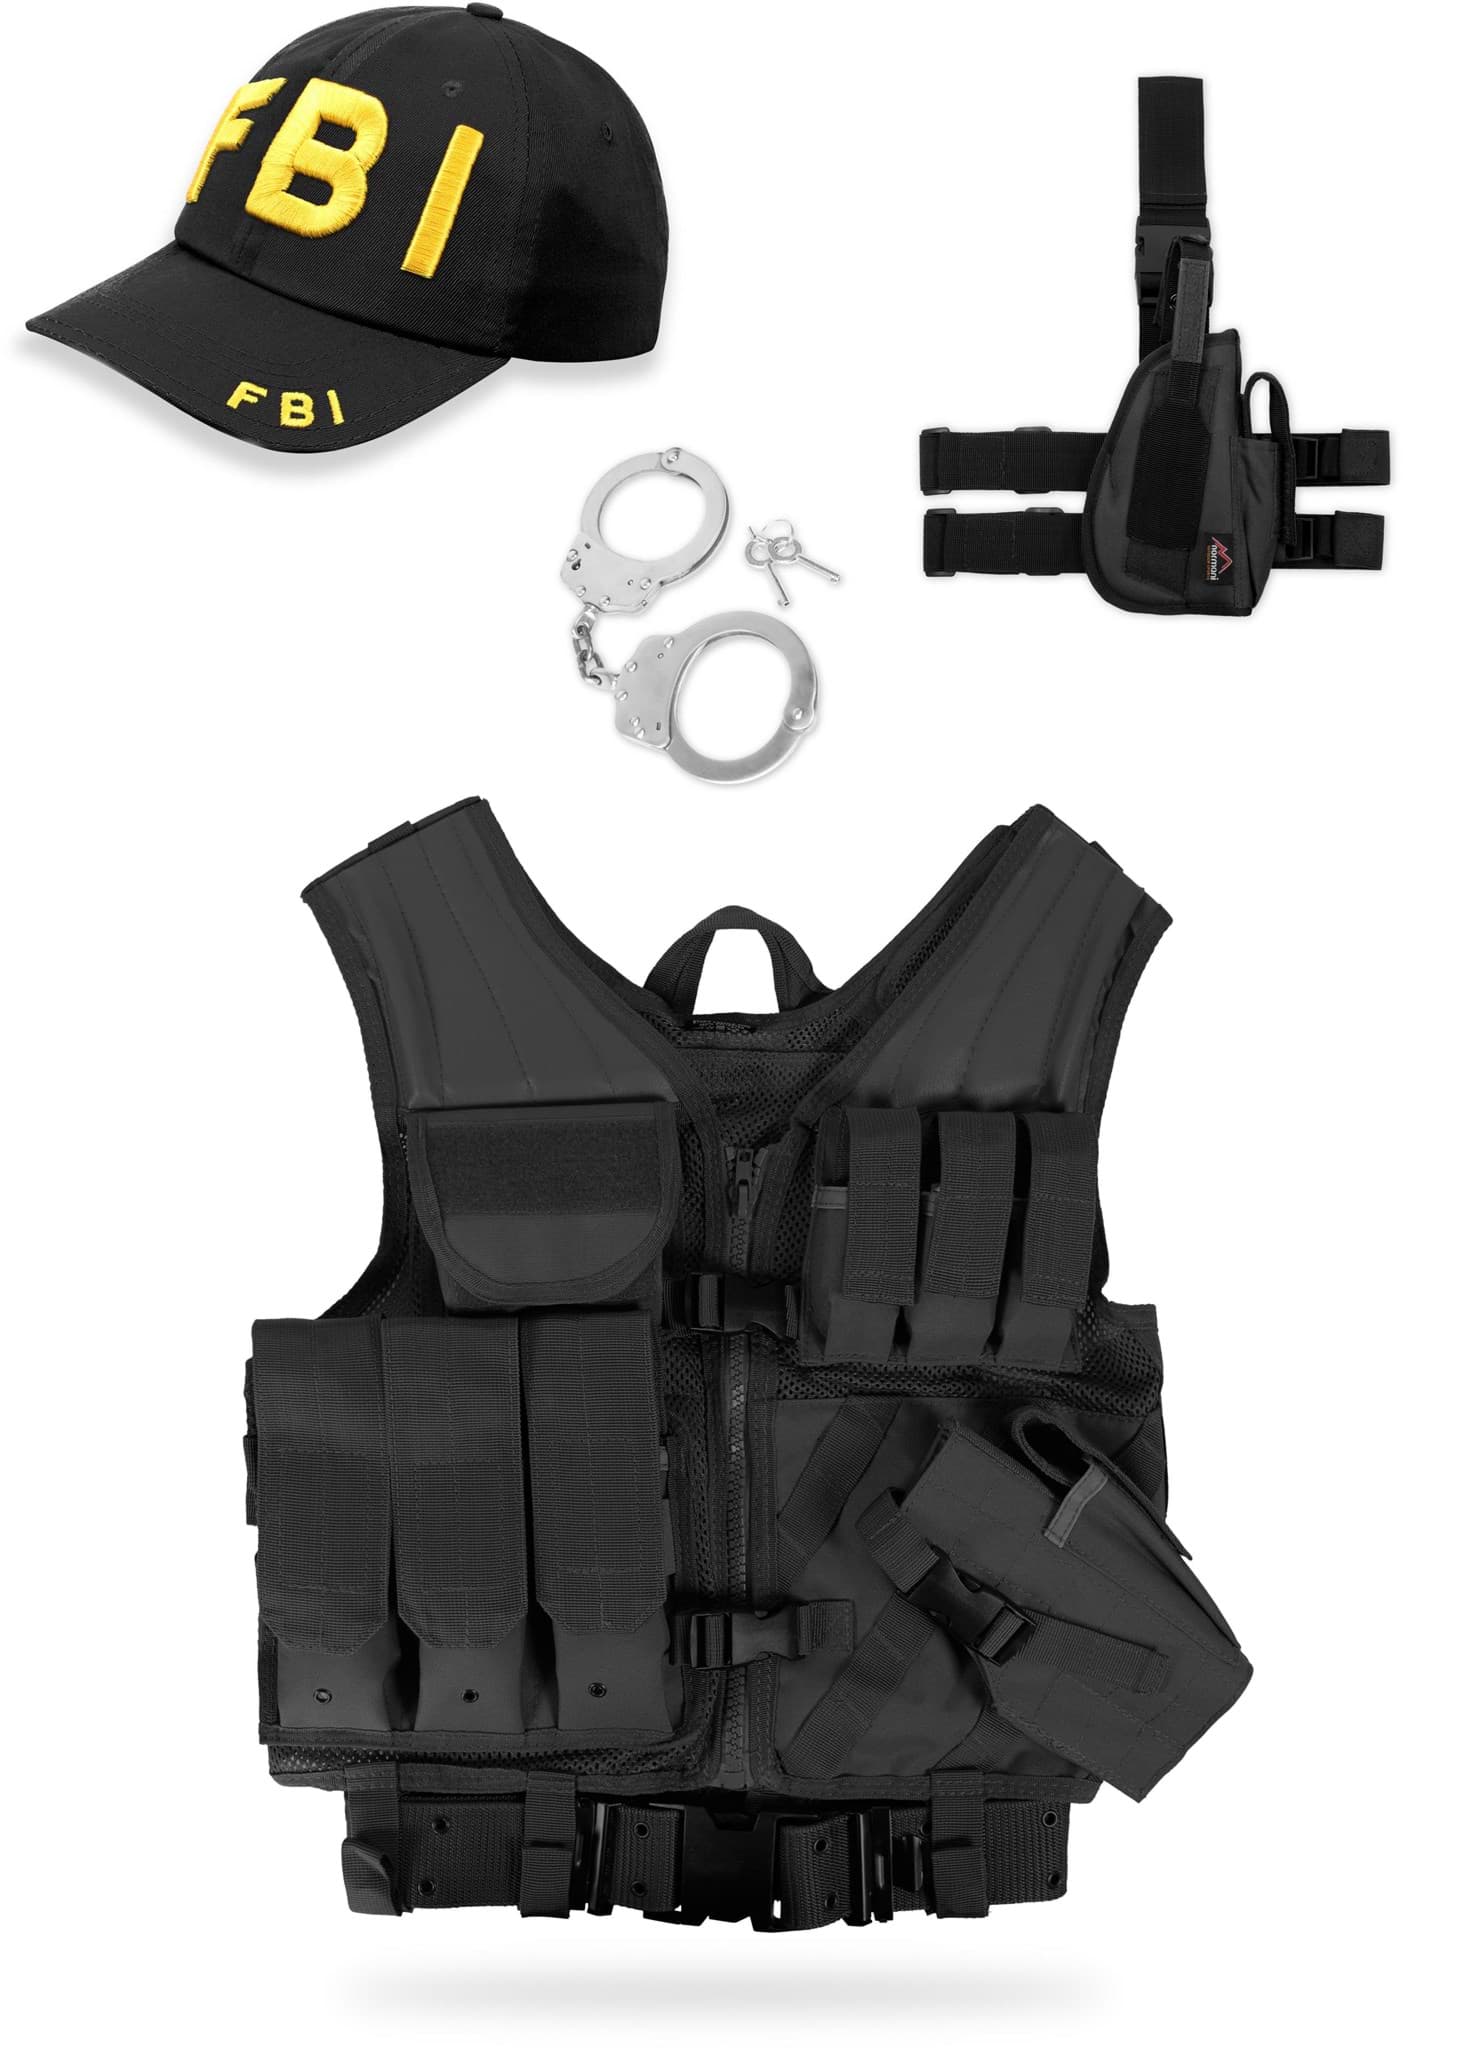 Bild von FBI Kostüm bestehend aus USMC Weste, Handschellen, Cap und Beinholster Rechts